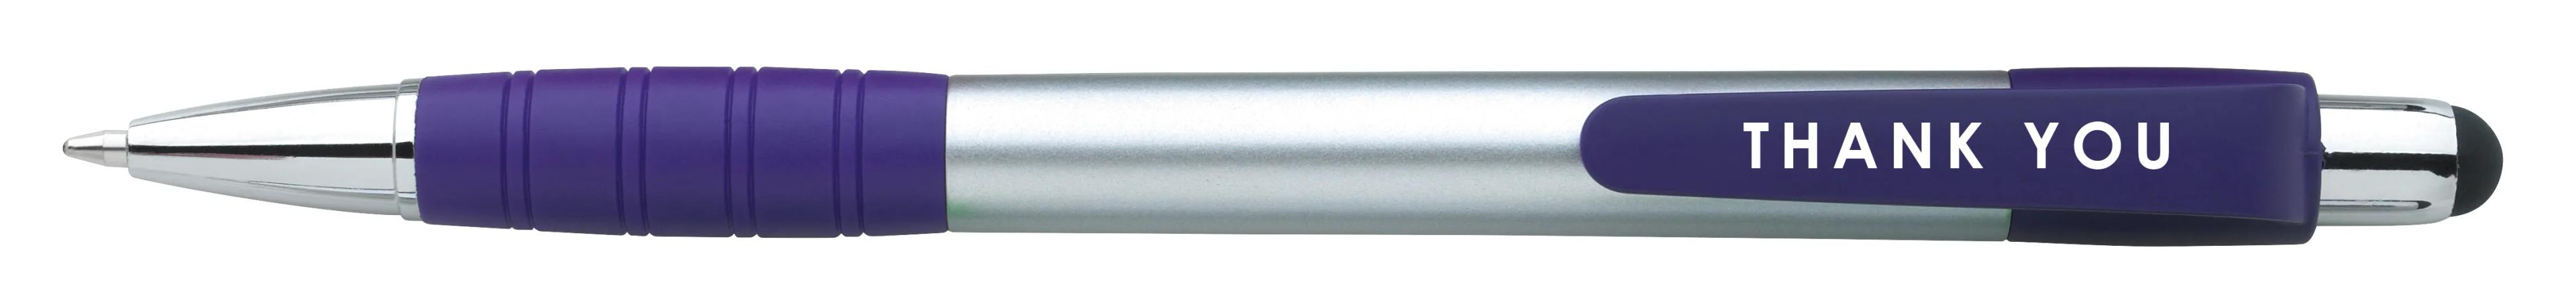 Silver Element Stylus Pen 47 of 53